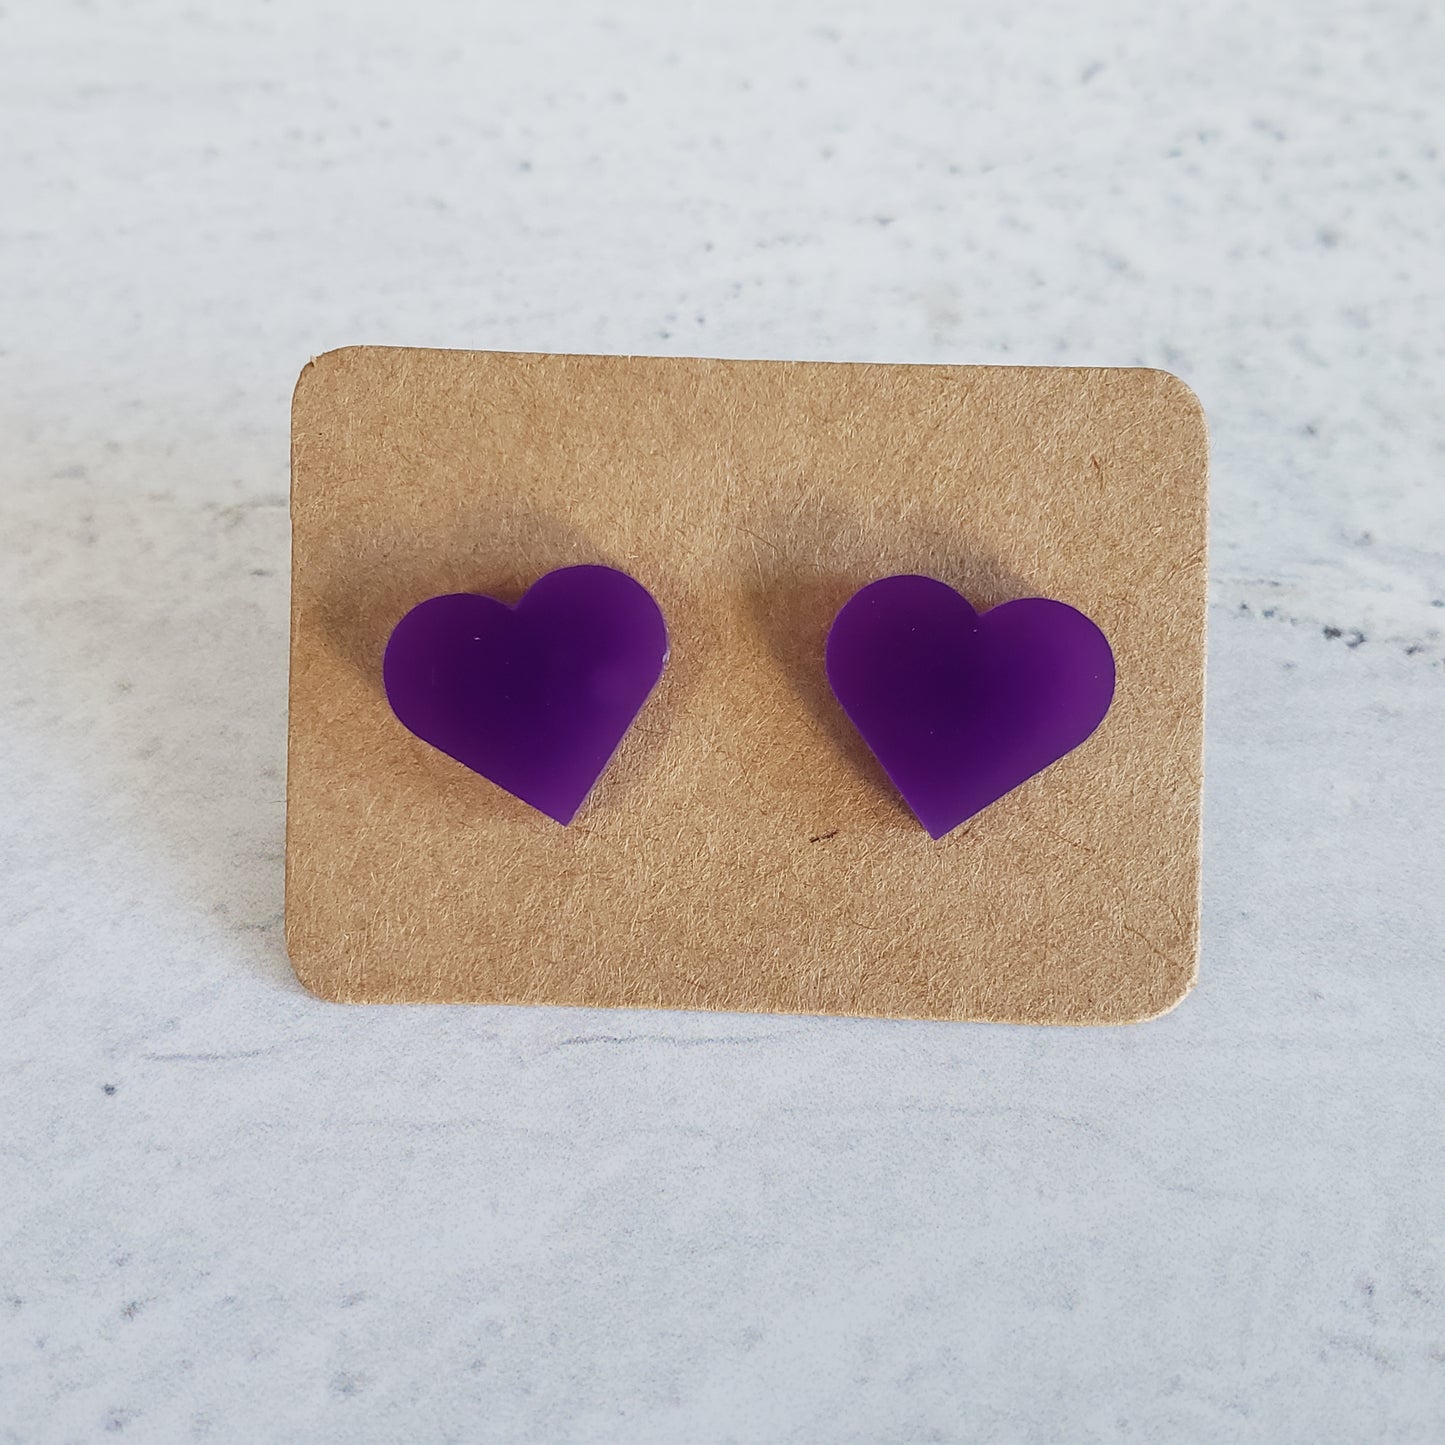 Gloss purple heart shaped stud earrings